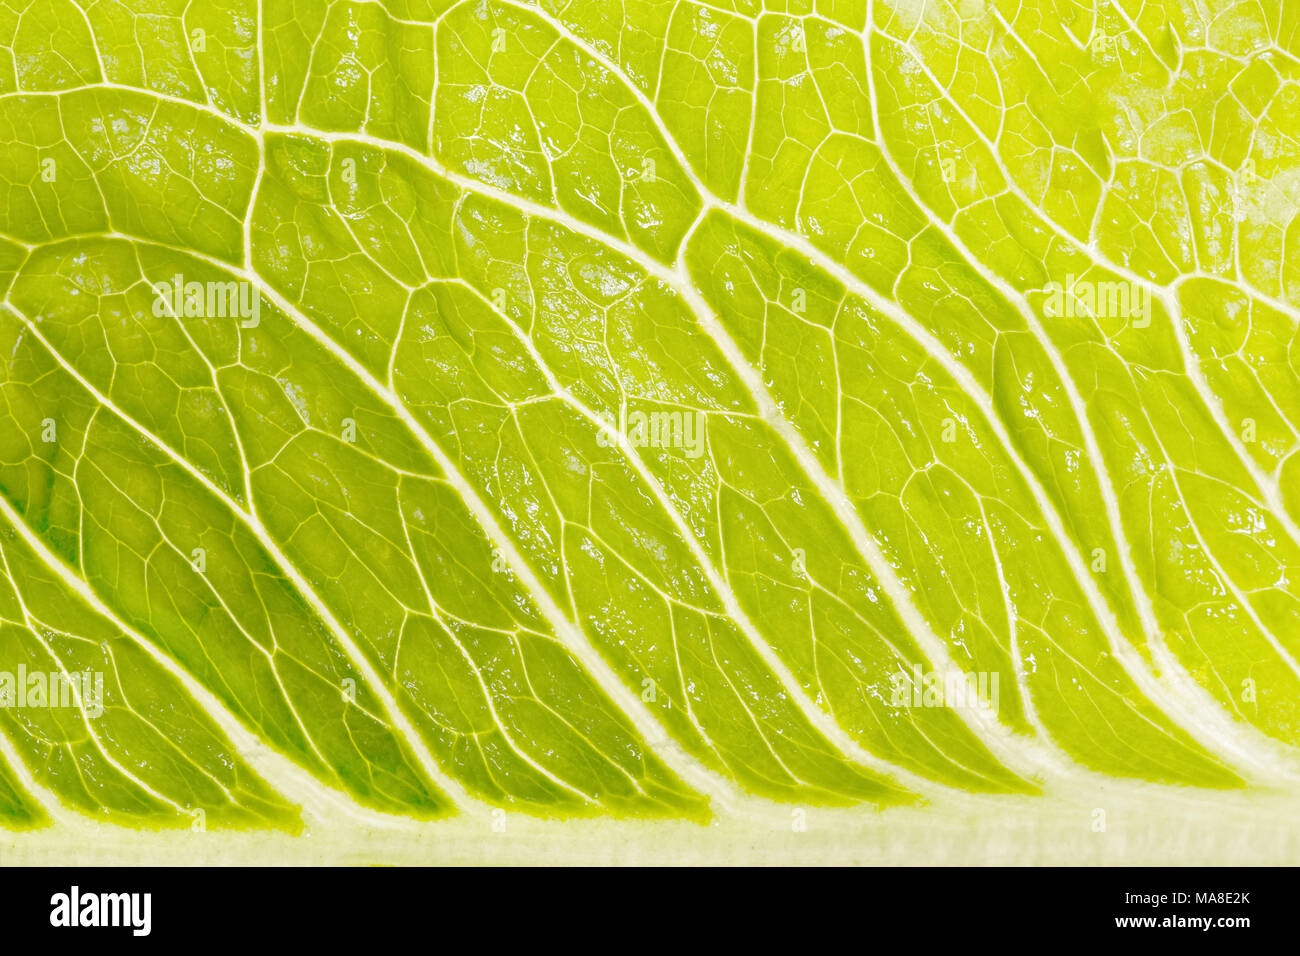 Erstaunlich grünen Salat in der vergrößerten Ansicht. Stockfoto